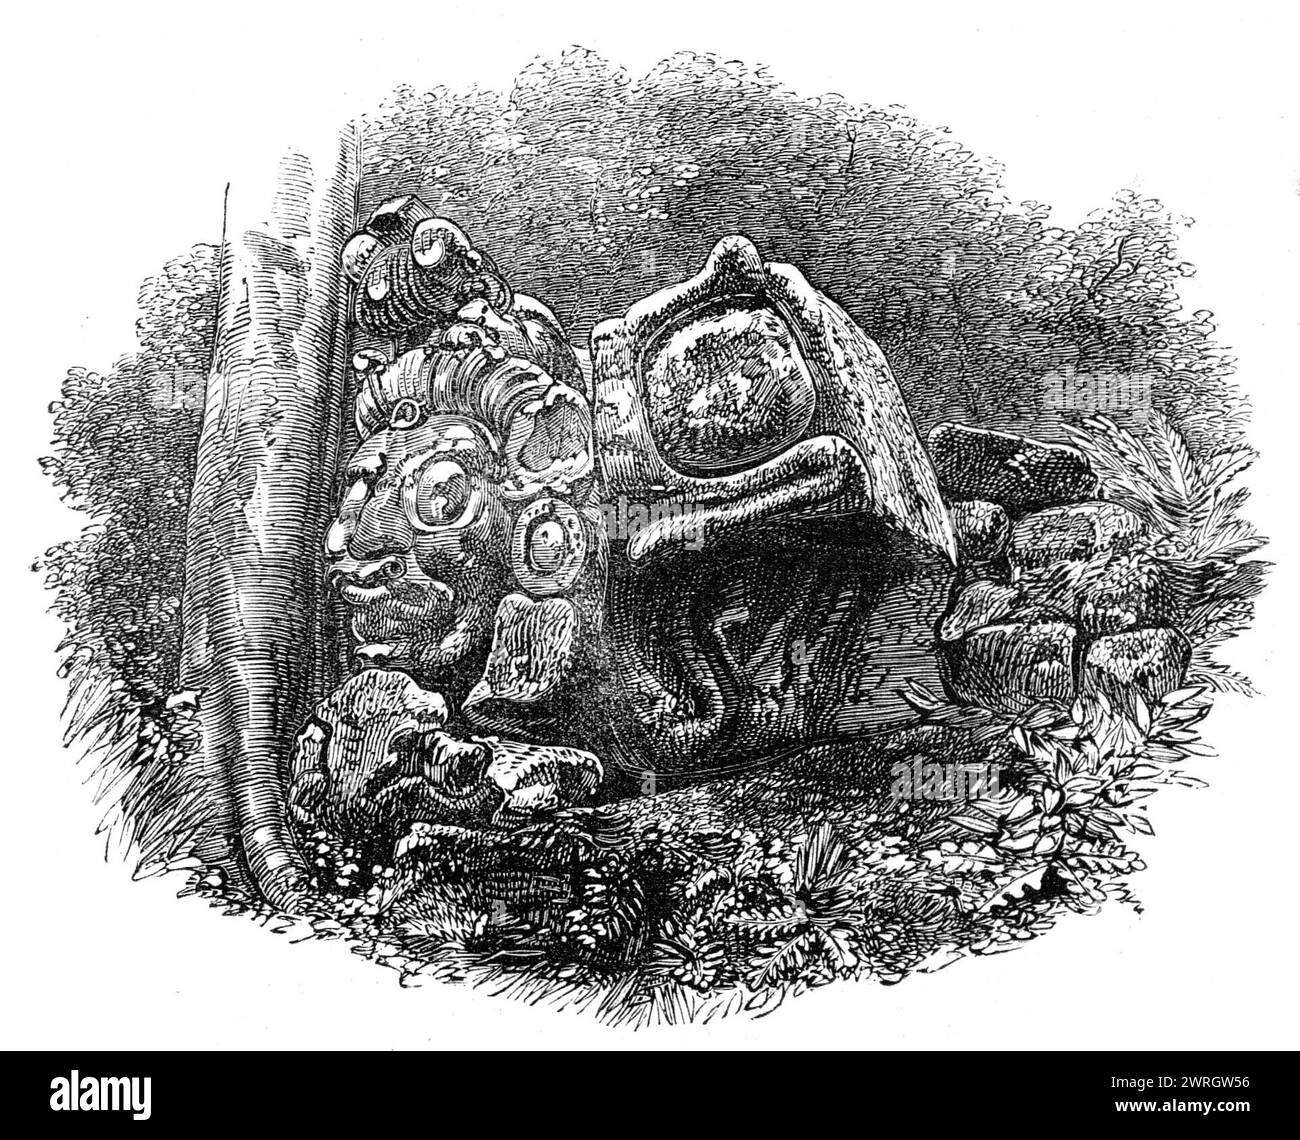 Die Ruinen von Copan, Zentralamerika: Ein Kopf, mit anderen skulpturalen Steinen, 1864. Kupferstich von einem Foto von Mr. Osbert Salvin. Wo die Ruinen stehen... öffnet sich das Tal in eine kleine Schwemmebene von großer Fruchtbarkeit. Überall, wo die Vegetation unberührt geblieben ist, wächst Wald. Es wäre schwierig zu bestimmen, wie weit sich die Ruinen im Tal erstrecken. während man die ganze Straße entlang von Skulpturen sehen kann, die zu dem Punkt führen, der scheinbar der zentrale Punkt der Ruinen zu sein scheint... zeigen die Eingeborenen in den Hügeln auf einen bemalten Stein hier und einen geschnitzten Stein dort. Die Ruine Stockfoto